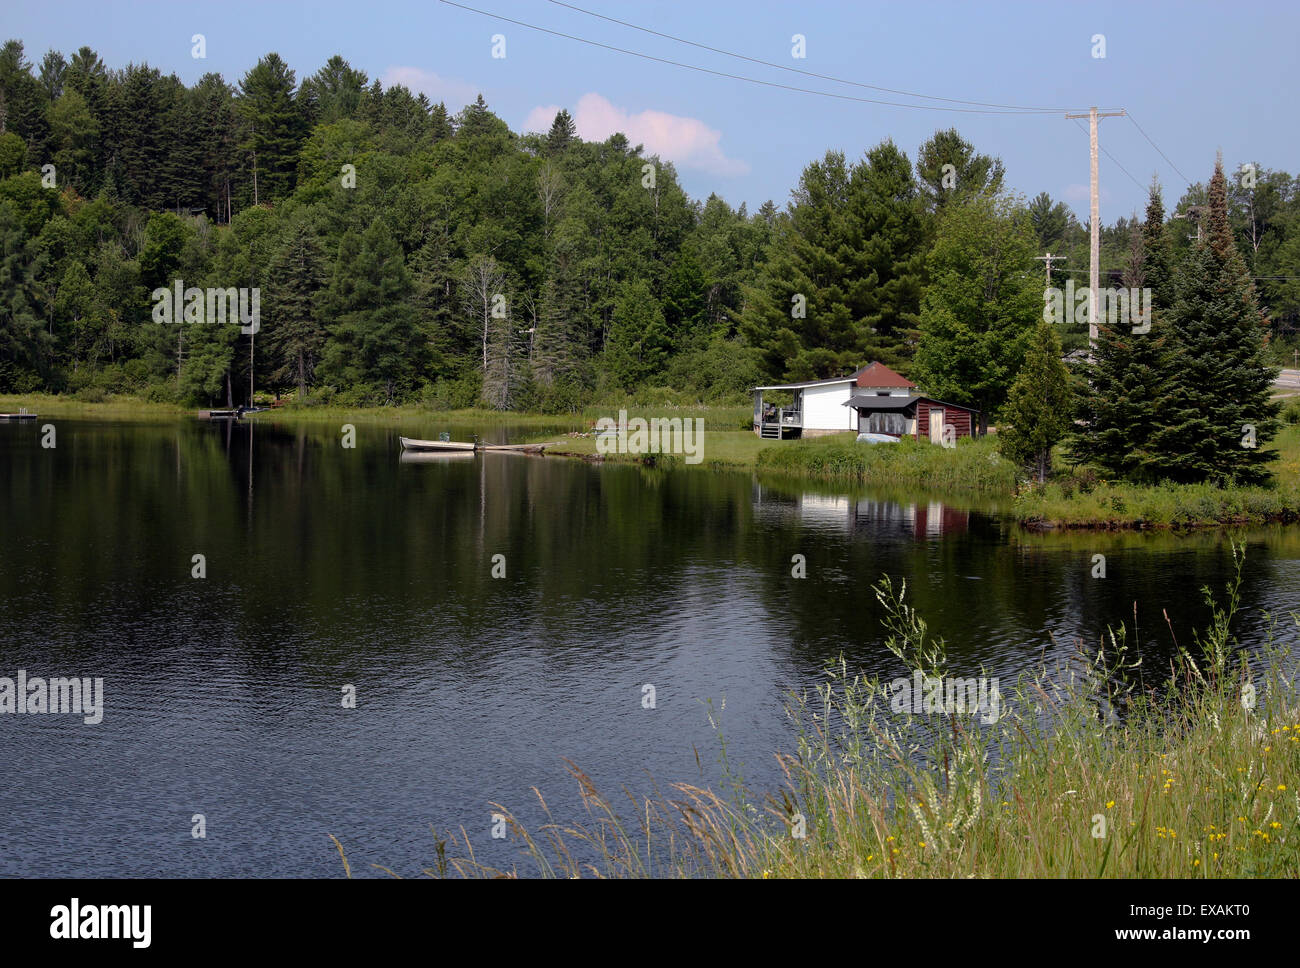 Cabaña en el lago Abanake Adirondack Adirondack Parque del Estado de Nueva York, EE.UU. US Latina. Foto de stock